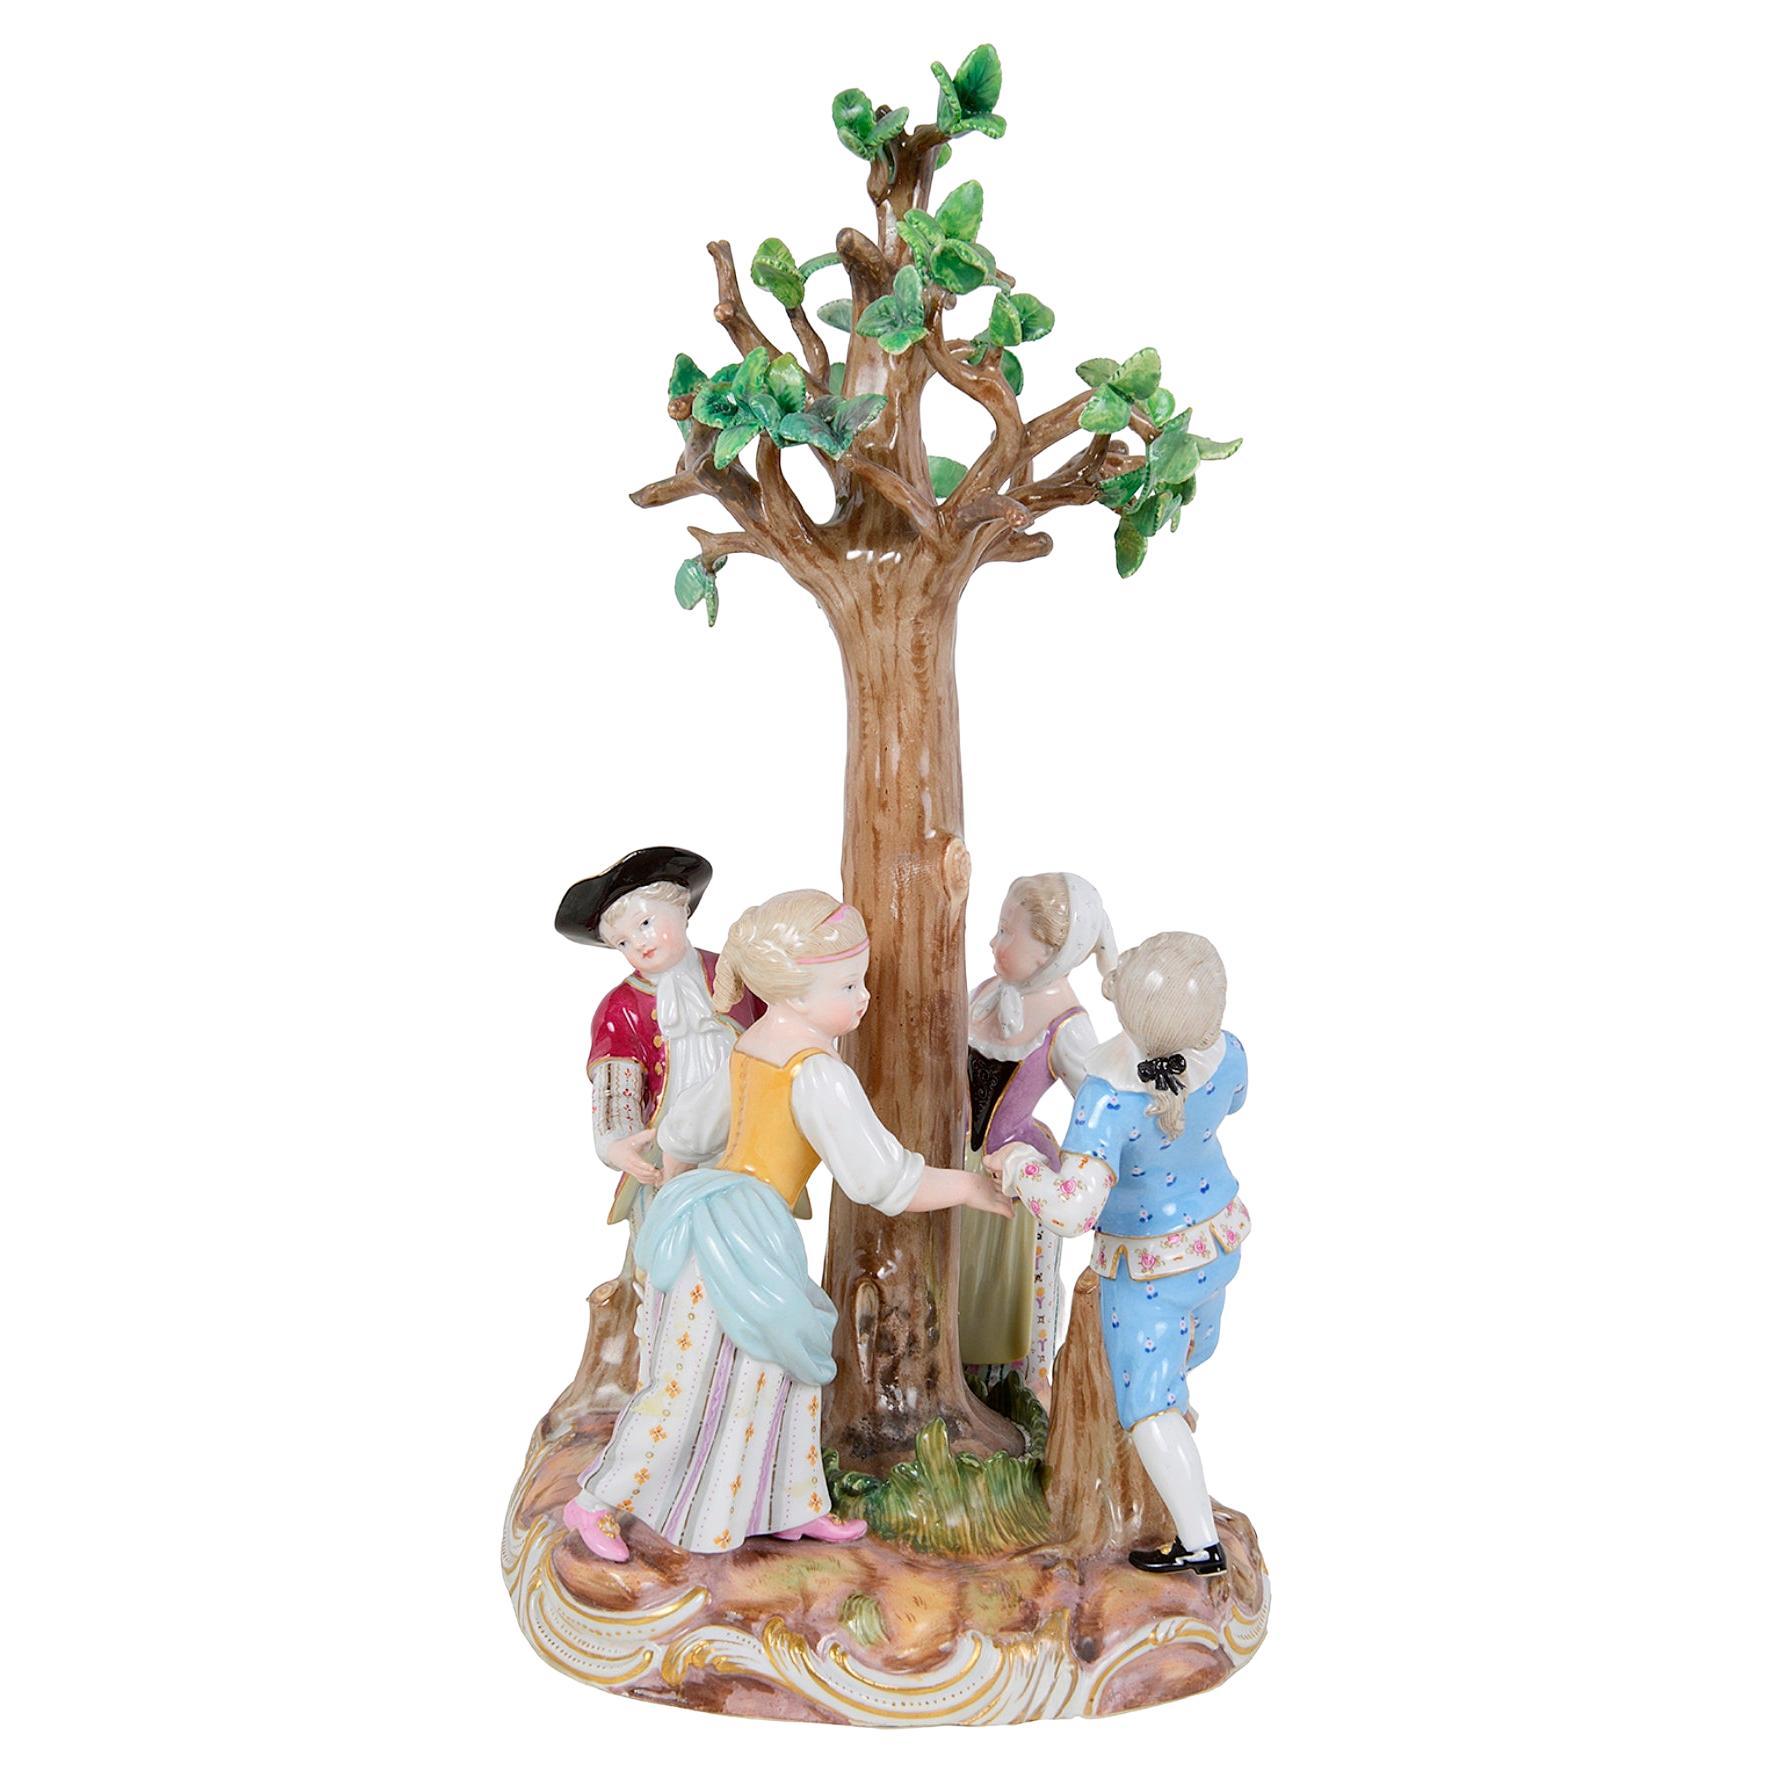 Meissener Garderobenfiguren, Kinder tanzen rund um einen Baum, 19. Jahrhundert